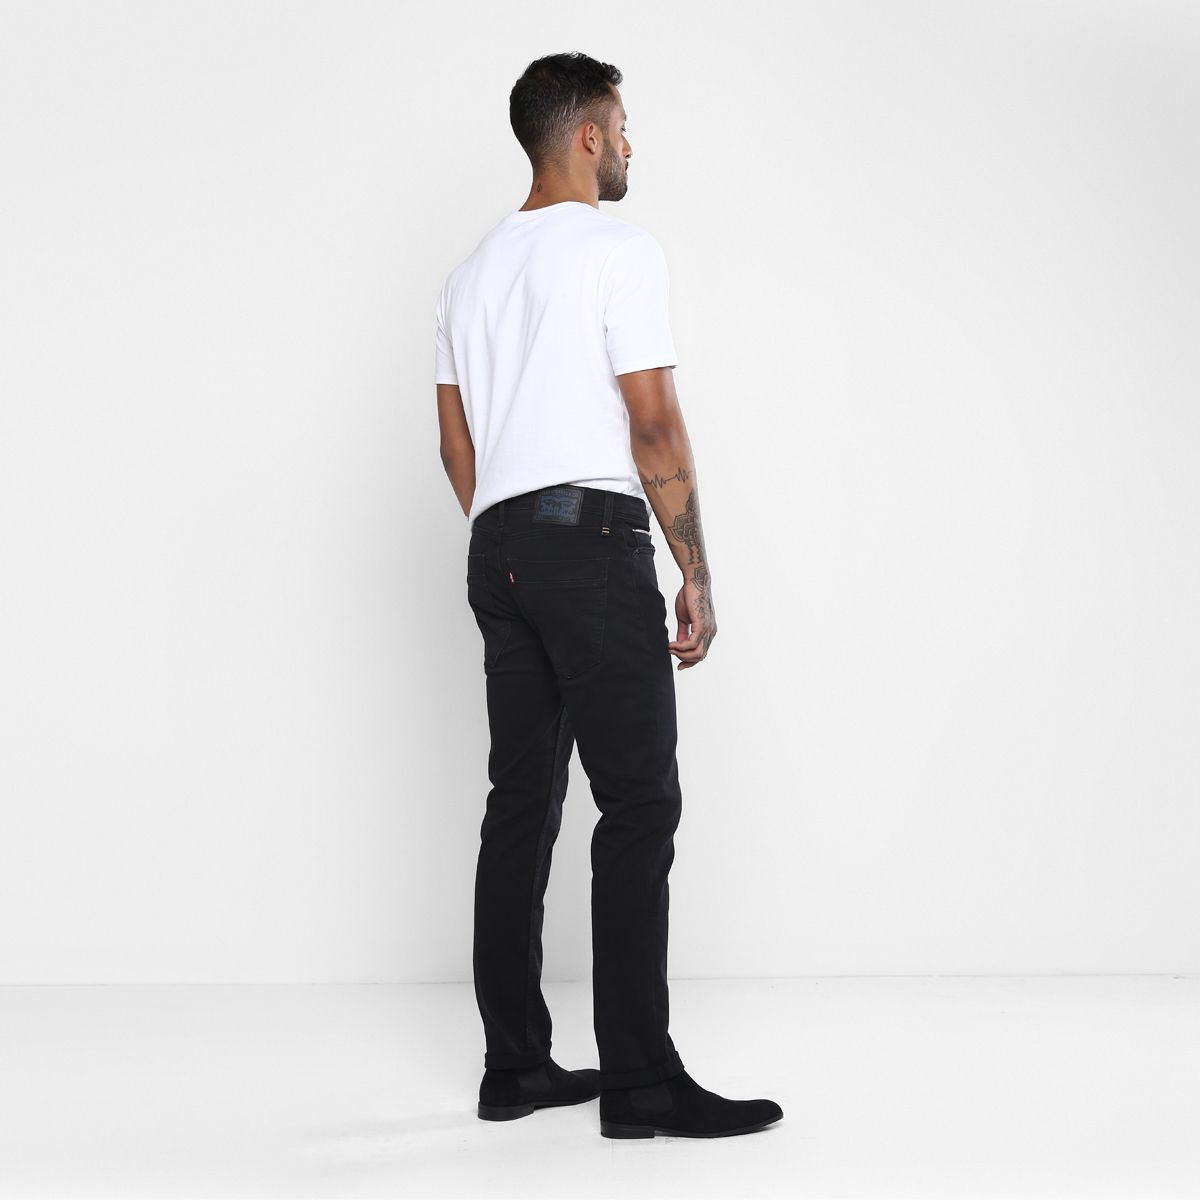 LEVIS MEN Single Length Jeans 86665-0000 Black 38